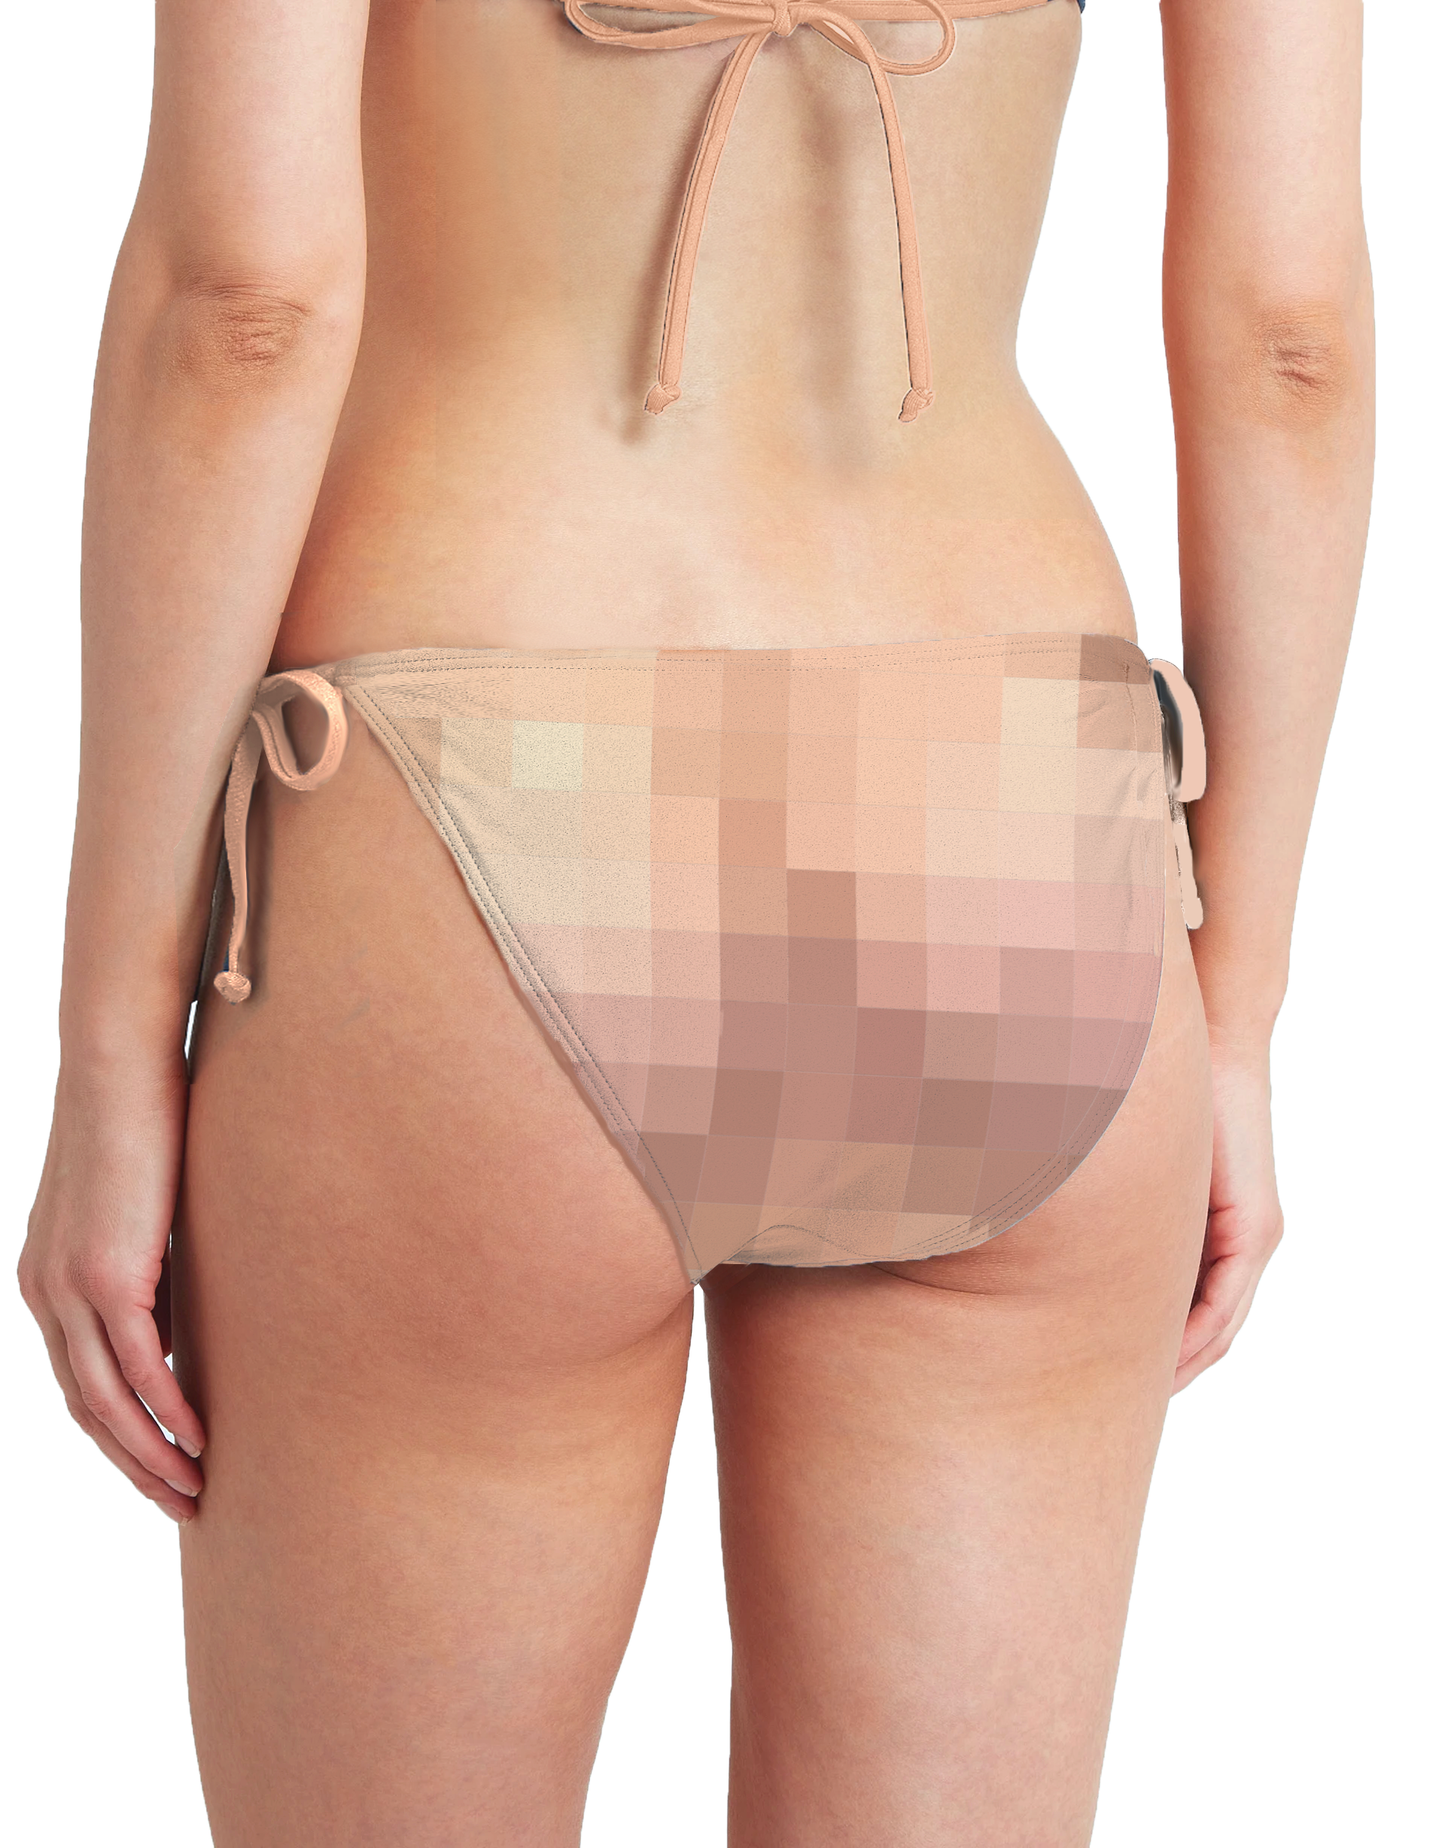 Censored Edition Bikini Set